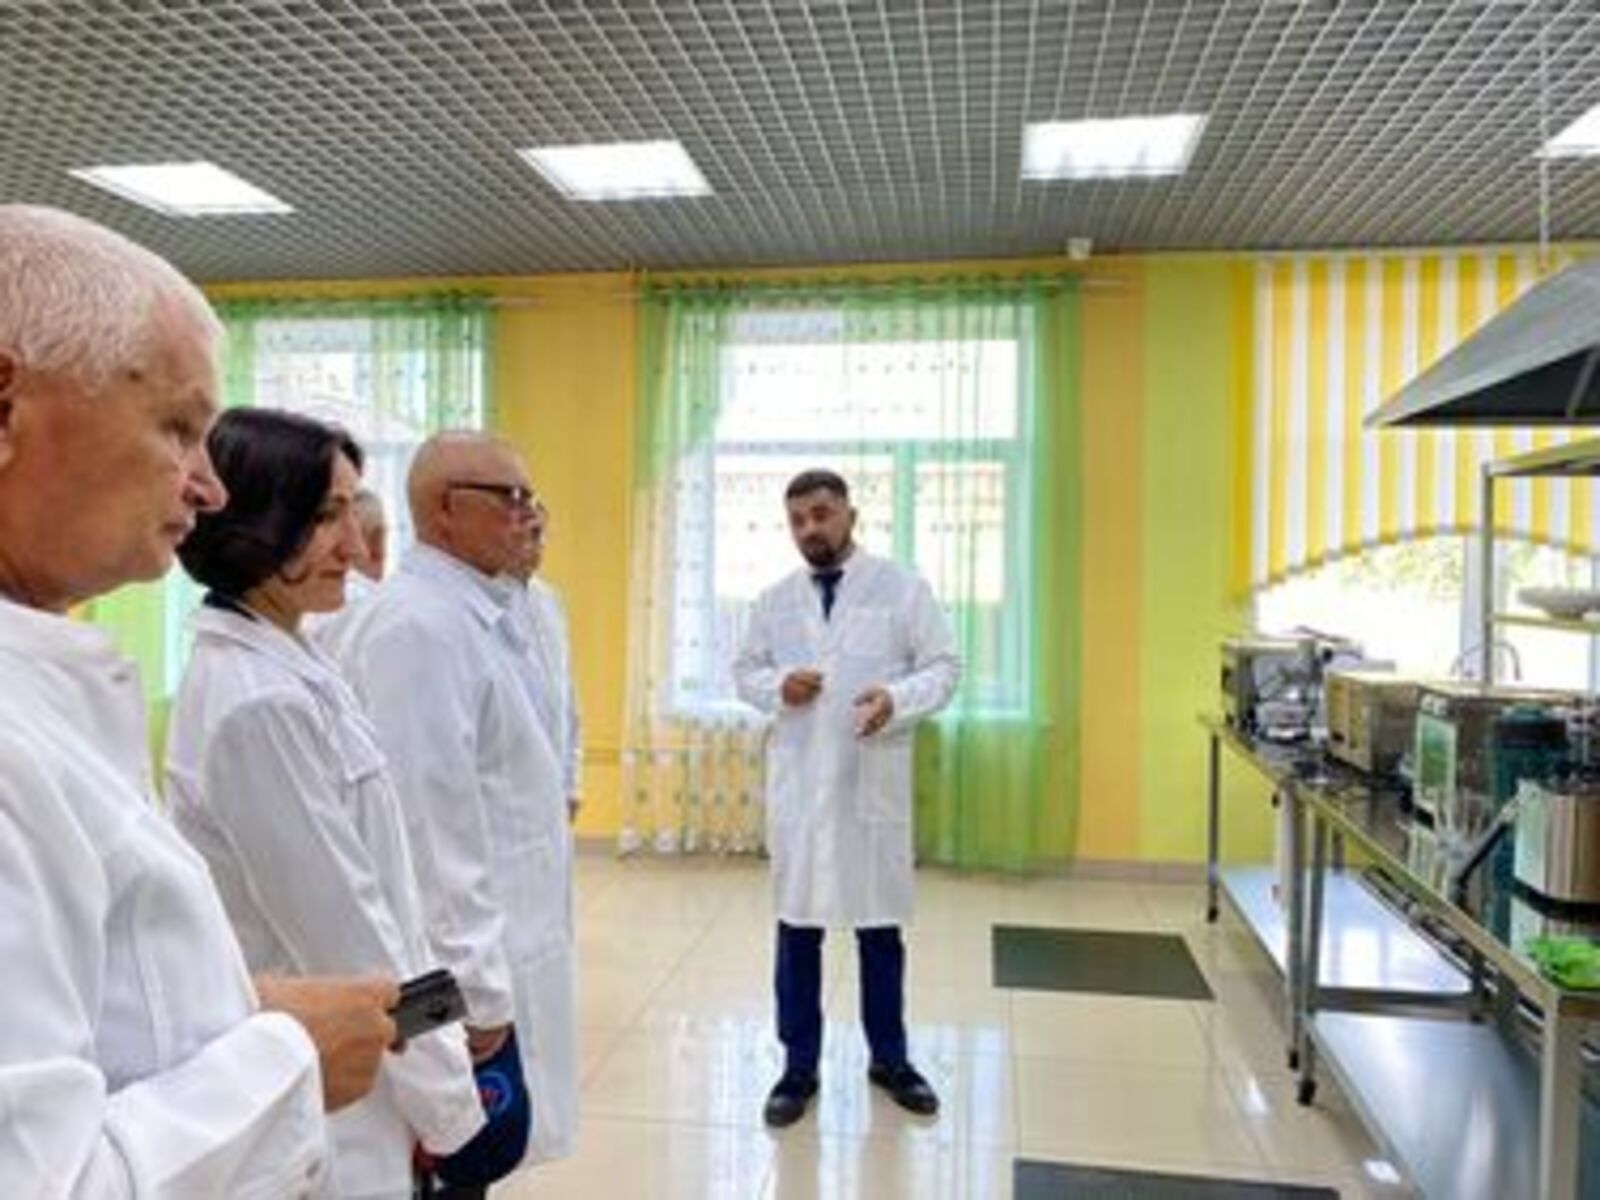 Нацпроект "Образование": В Башкирском аграрно-технологическом колледже открылись две мастерские по стандартам WorldSkills